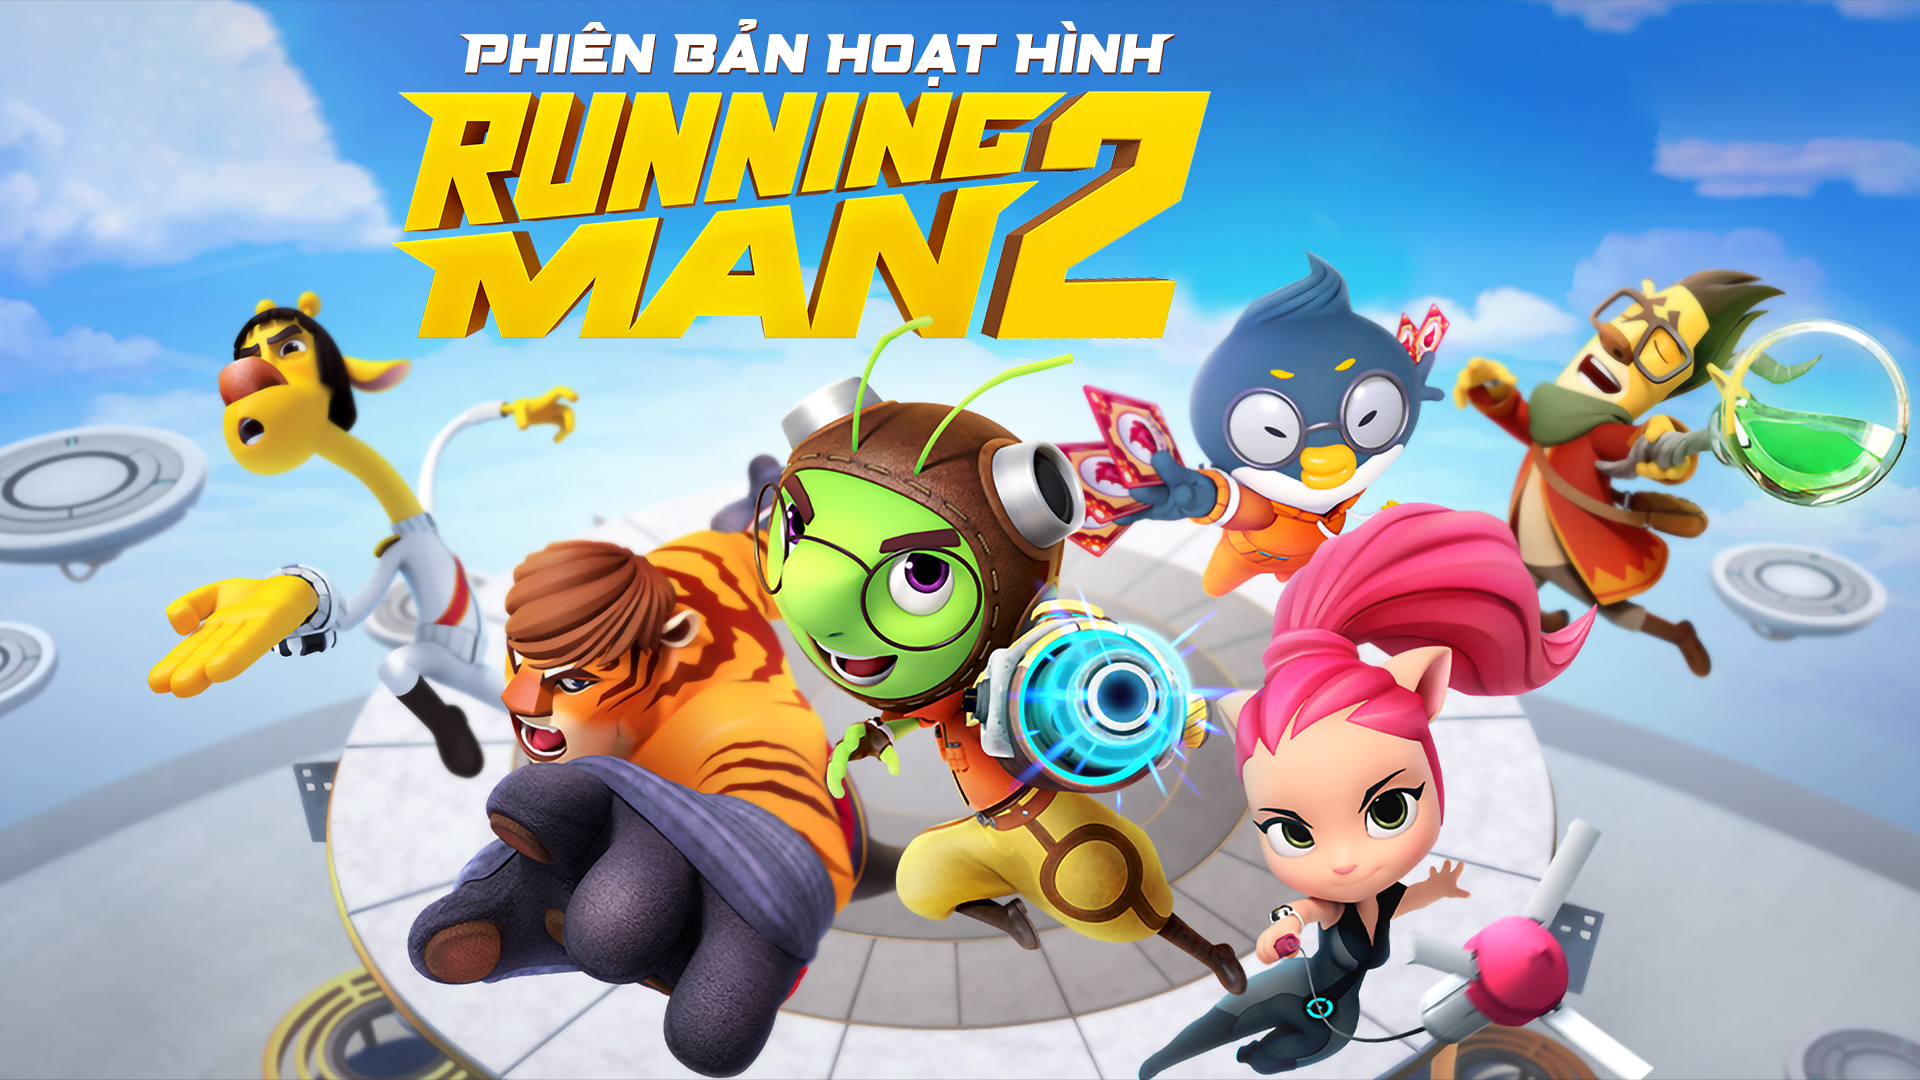 Running Man - Phiên bản hoạt hình 2 - 48 Tập | VieON